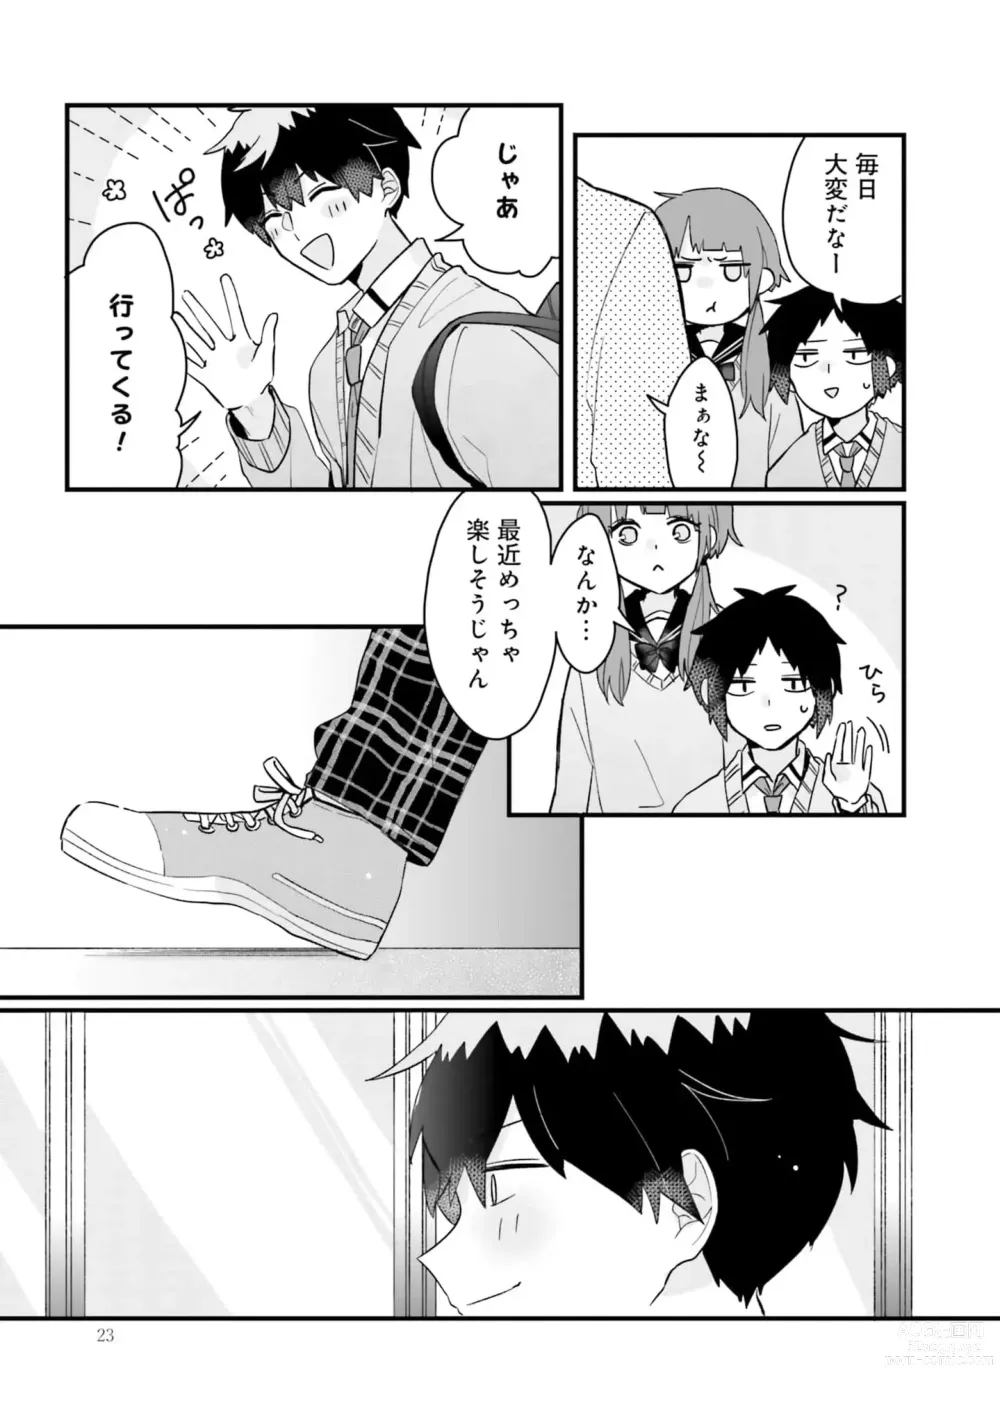 Page 23 of manga Shishunki ni wa Me no Doku desu